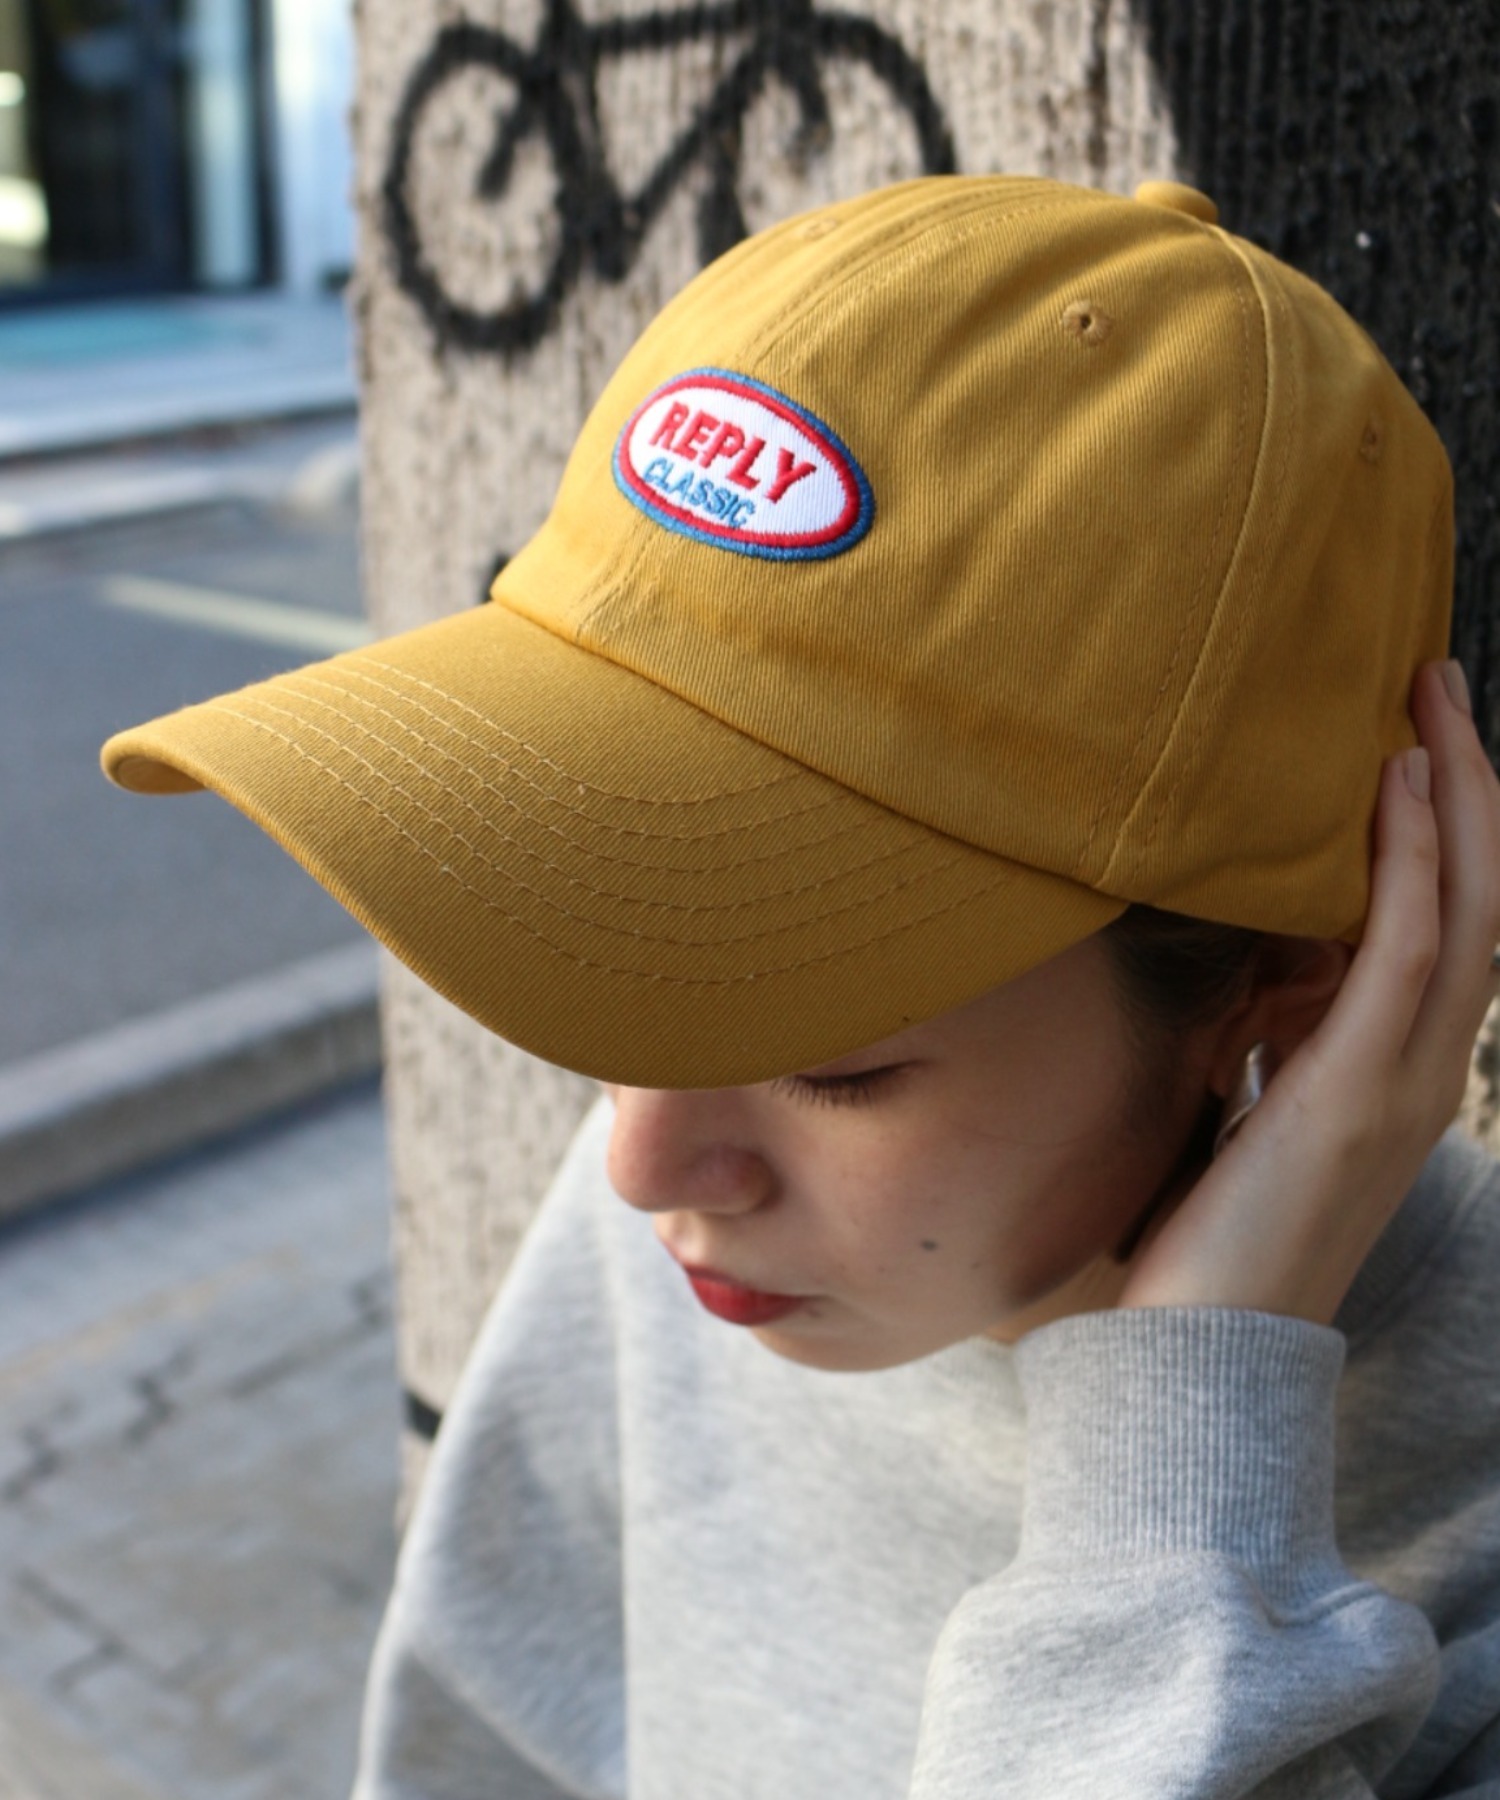 メンズ キャップ ホワイト ストリート ロック 帽子 韓国